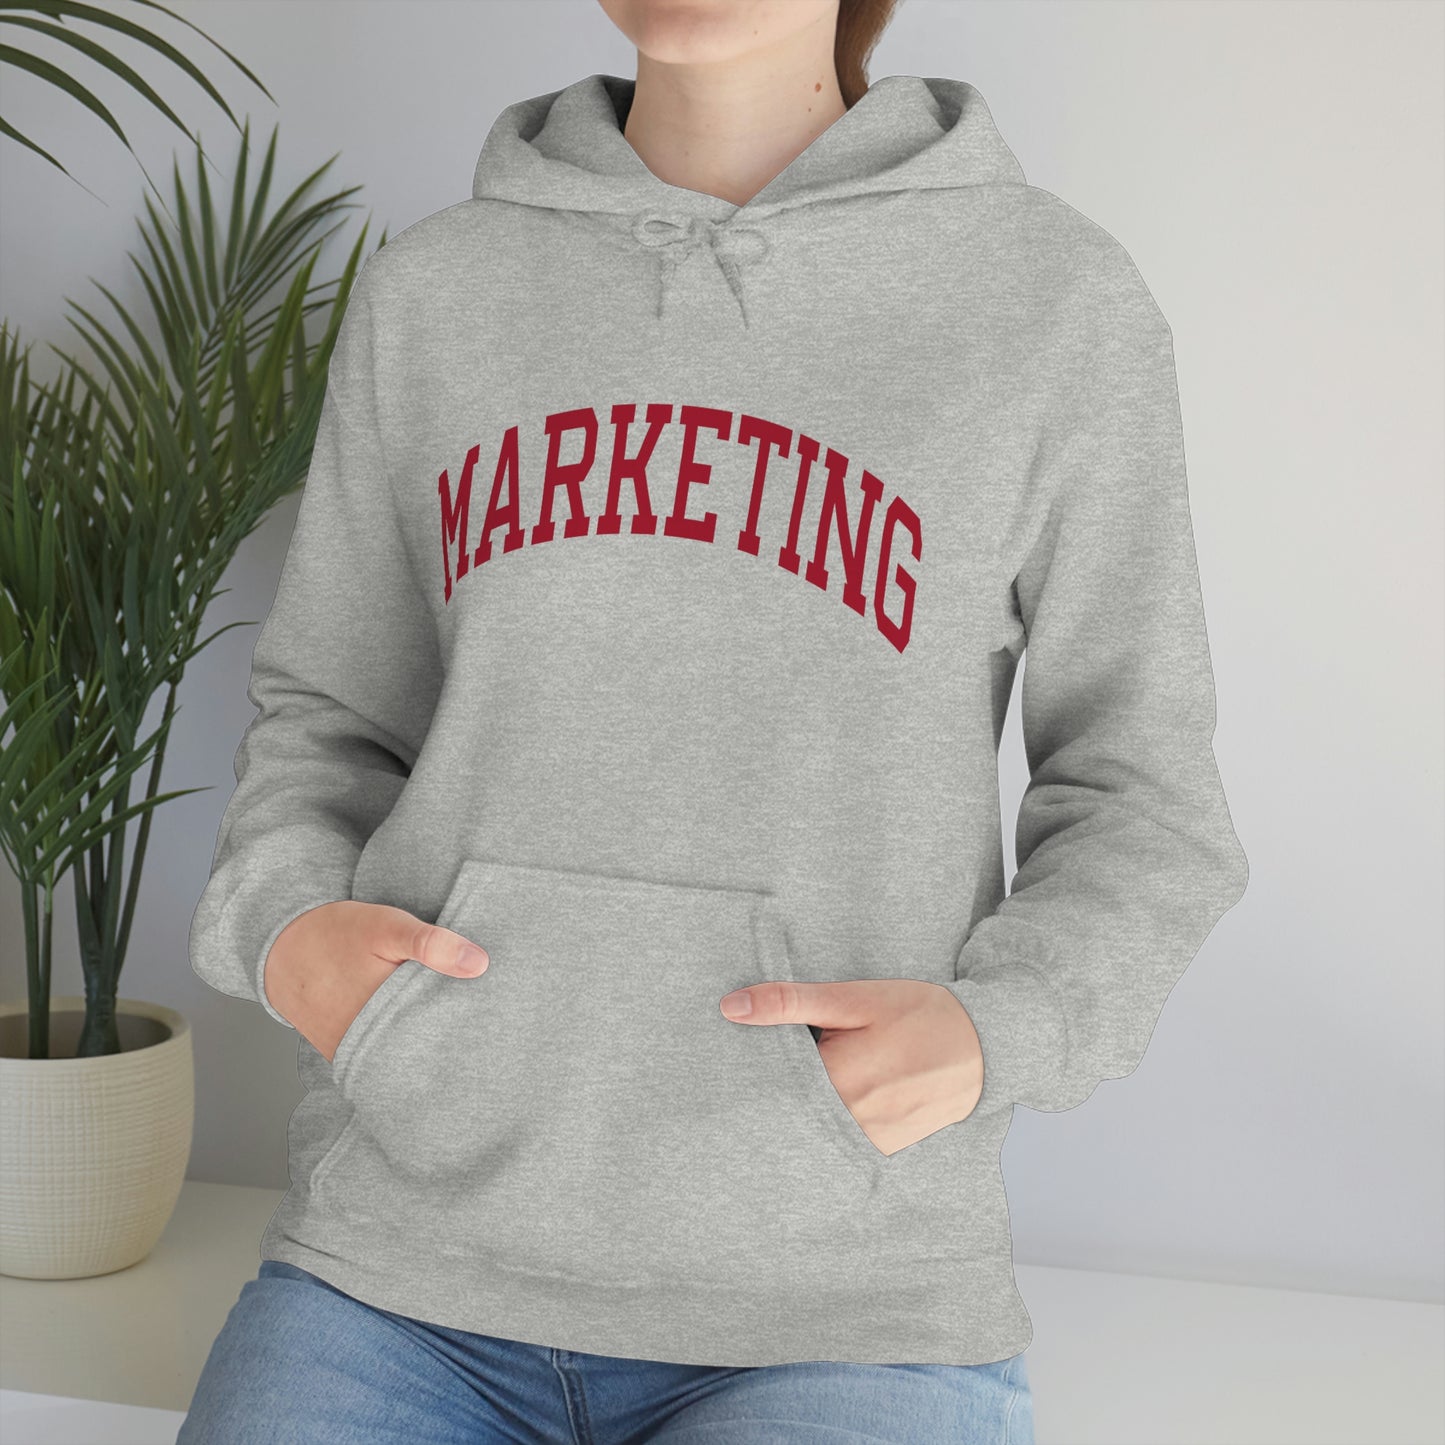 Cambridge Marketing Hooded Sweatshirt